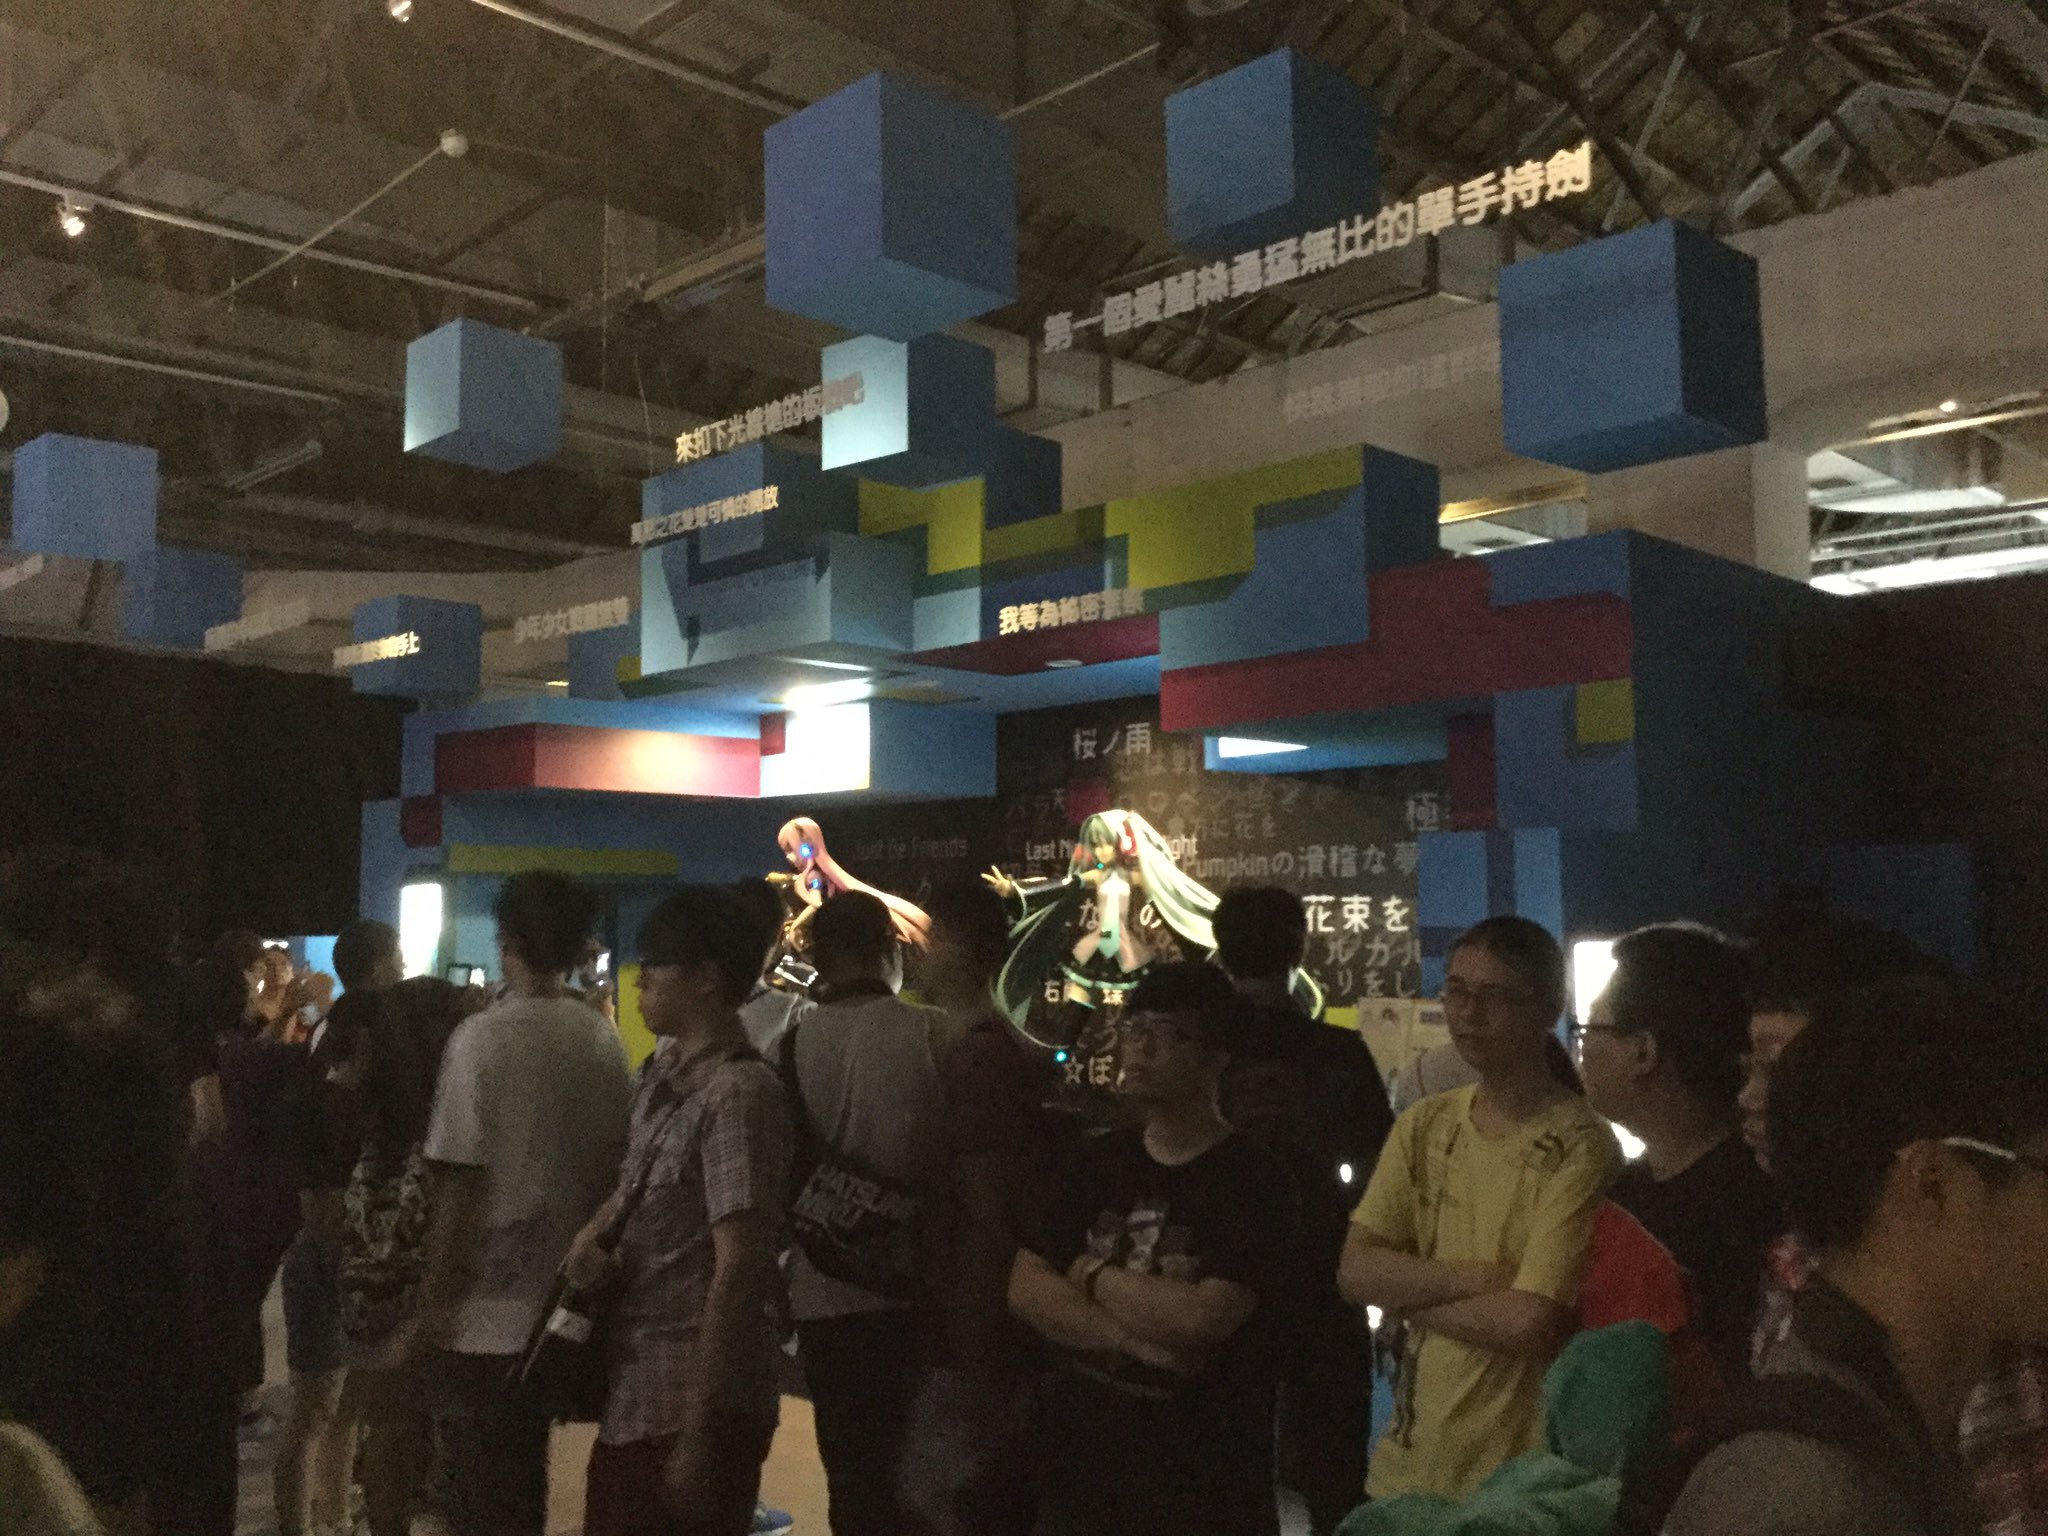 ボークス ドール企画室 ｄｄ担当 Hatsune Miku Expo 16 In Taiwan 会場の中は混雑してますが 空調が効いてて快適です イラストやフィギュアの展示 ゲームの試遊など時間を忘れて楽しめますよー T Co T33m3lzezn Twitter